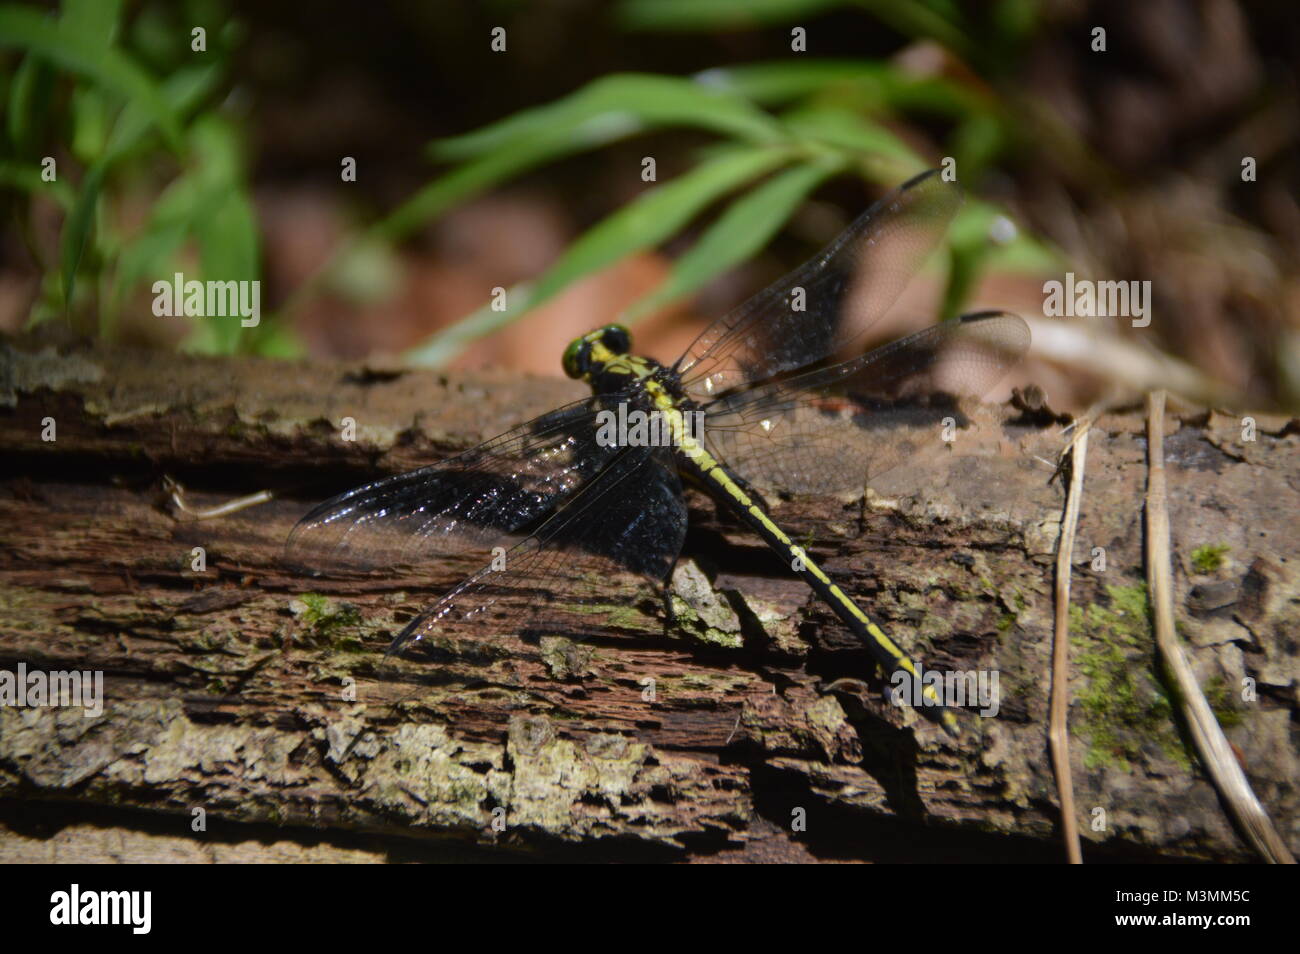 Eine grüne und schwarze Libelle auf mit einigen greenage im Hintergrund des Bildes. Stockfoto